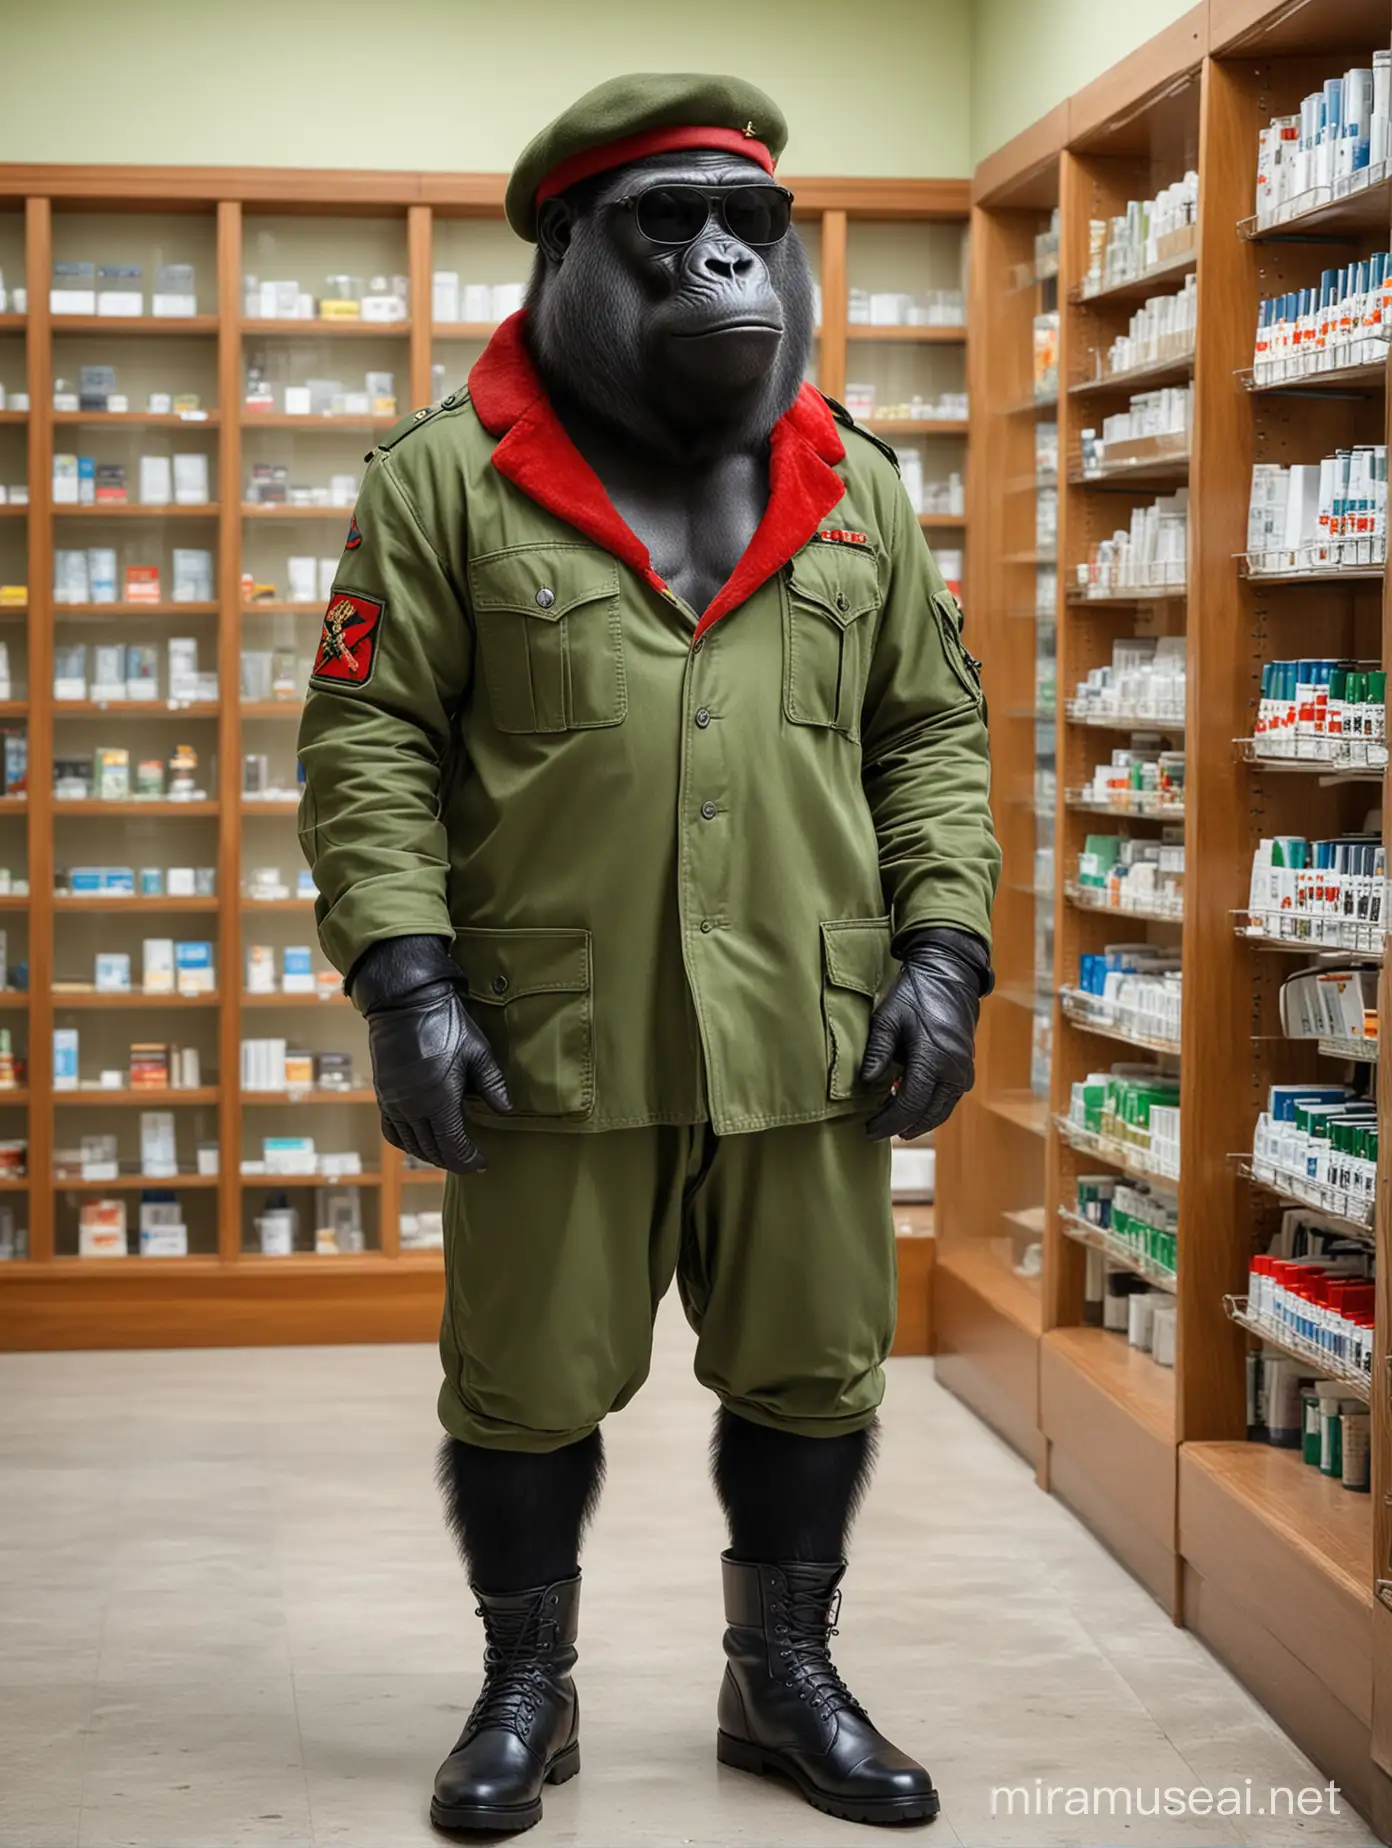 Gorila vestido de general militar de ropa verde. Lleva una boina roja en la cabeza y gafas oscuras de marco negro Esta parado en una farmacia..con botas de cuero negro